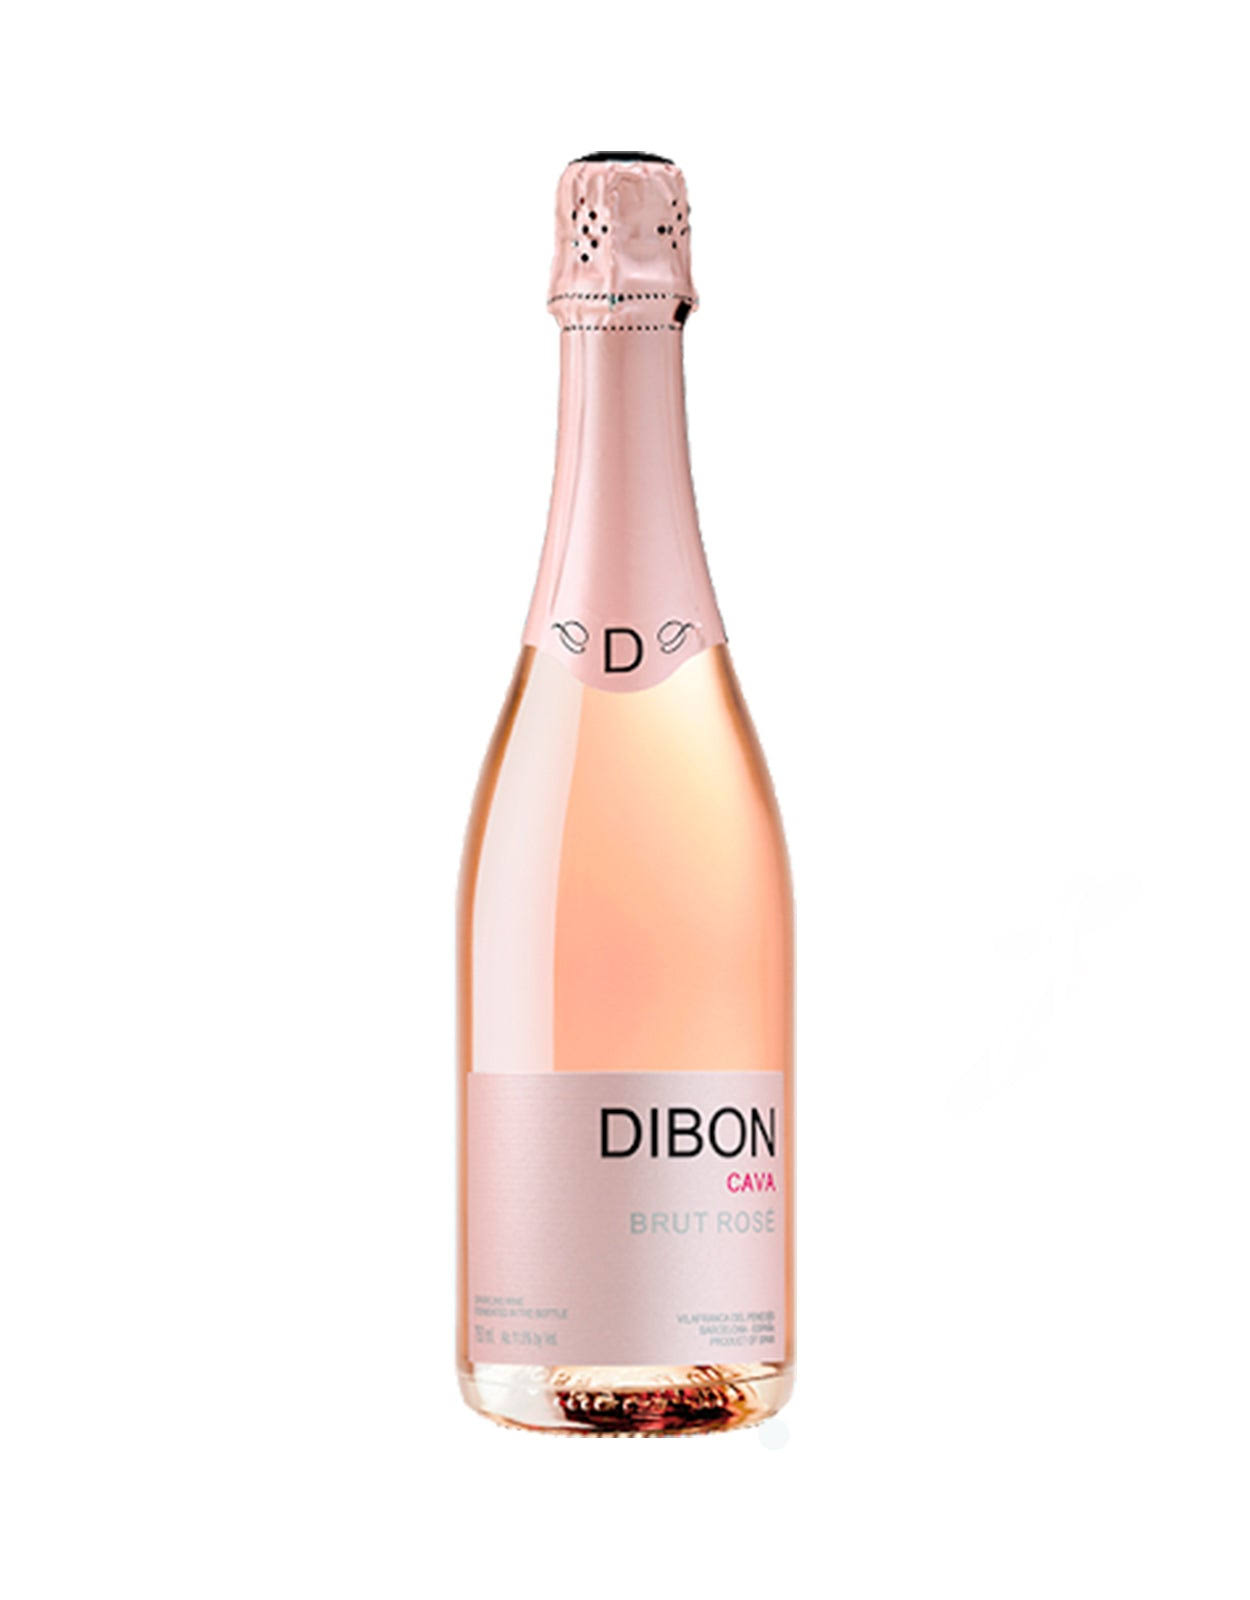 Dibon Brut Rose, Cava - 750 ml